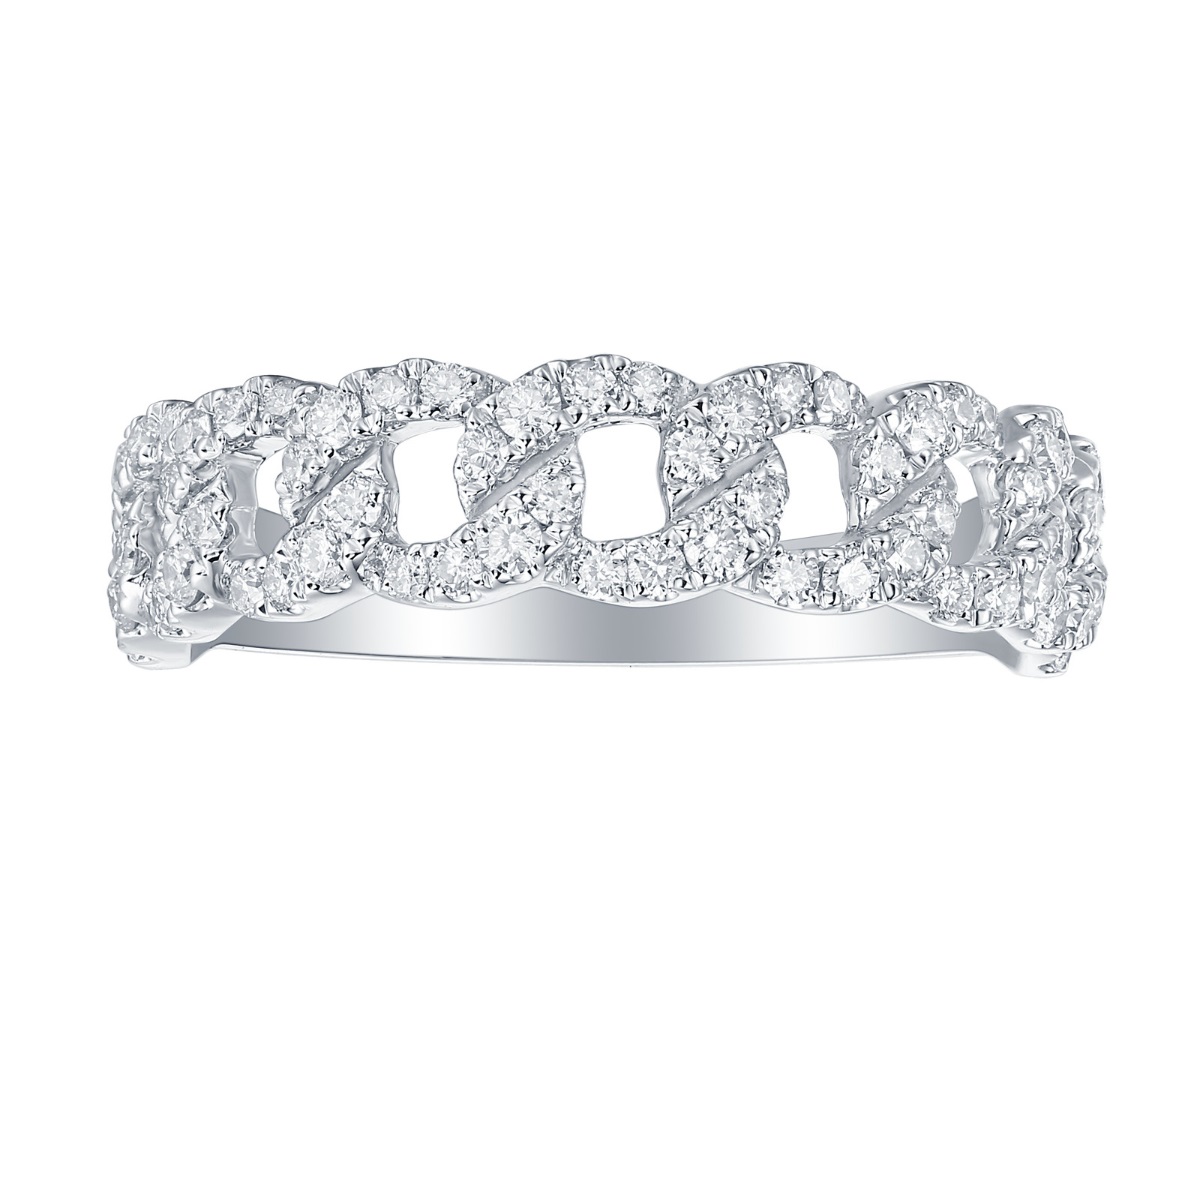 R36589WHT – 18K White Gold  Diamond Ring, 0.5 TCW